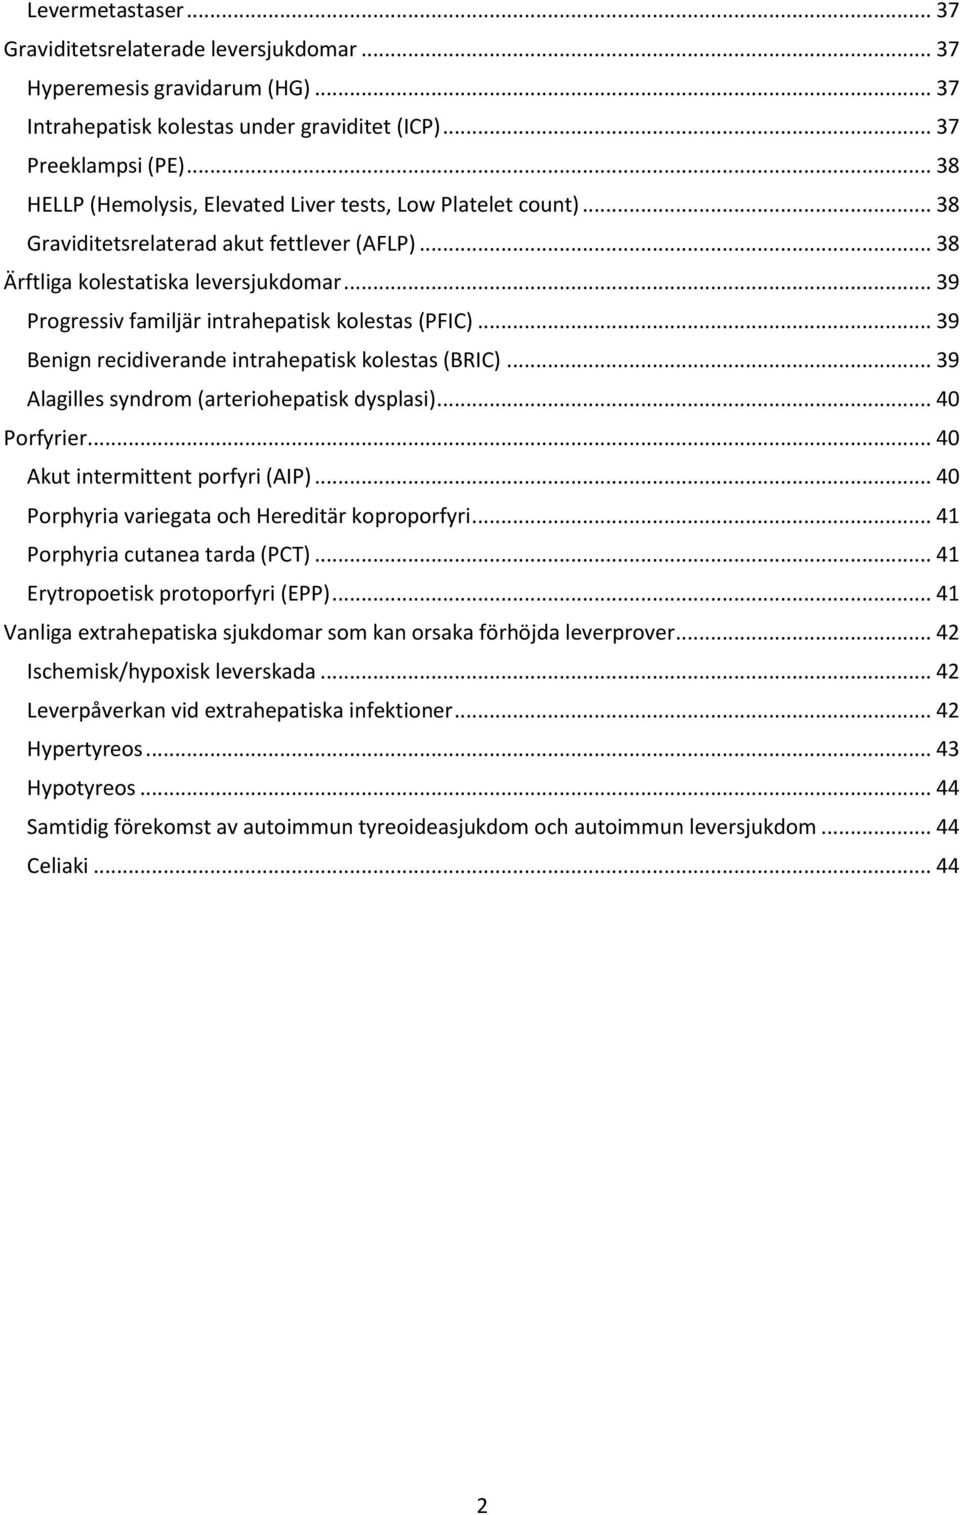 Utredning av patologiska leverprover - PDF Free Download